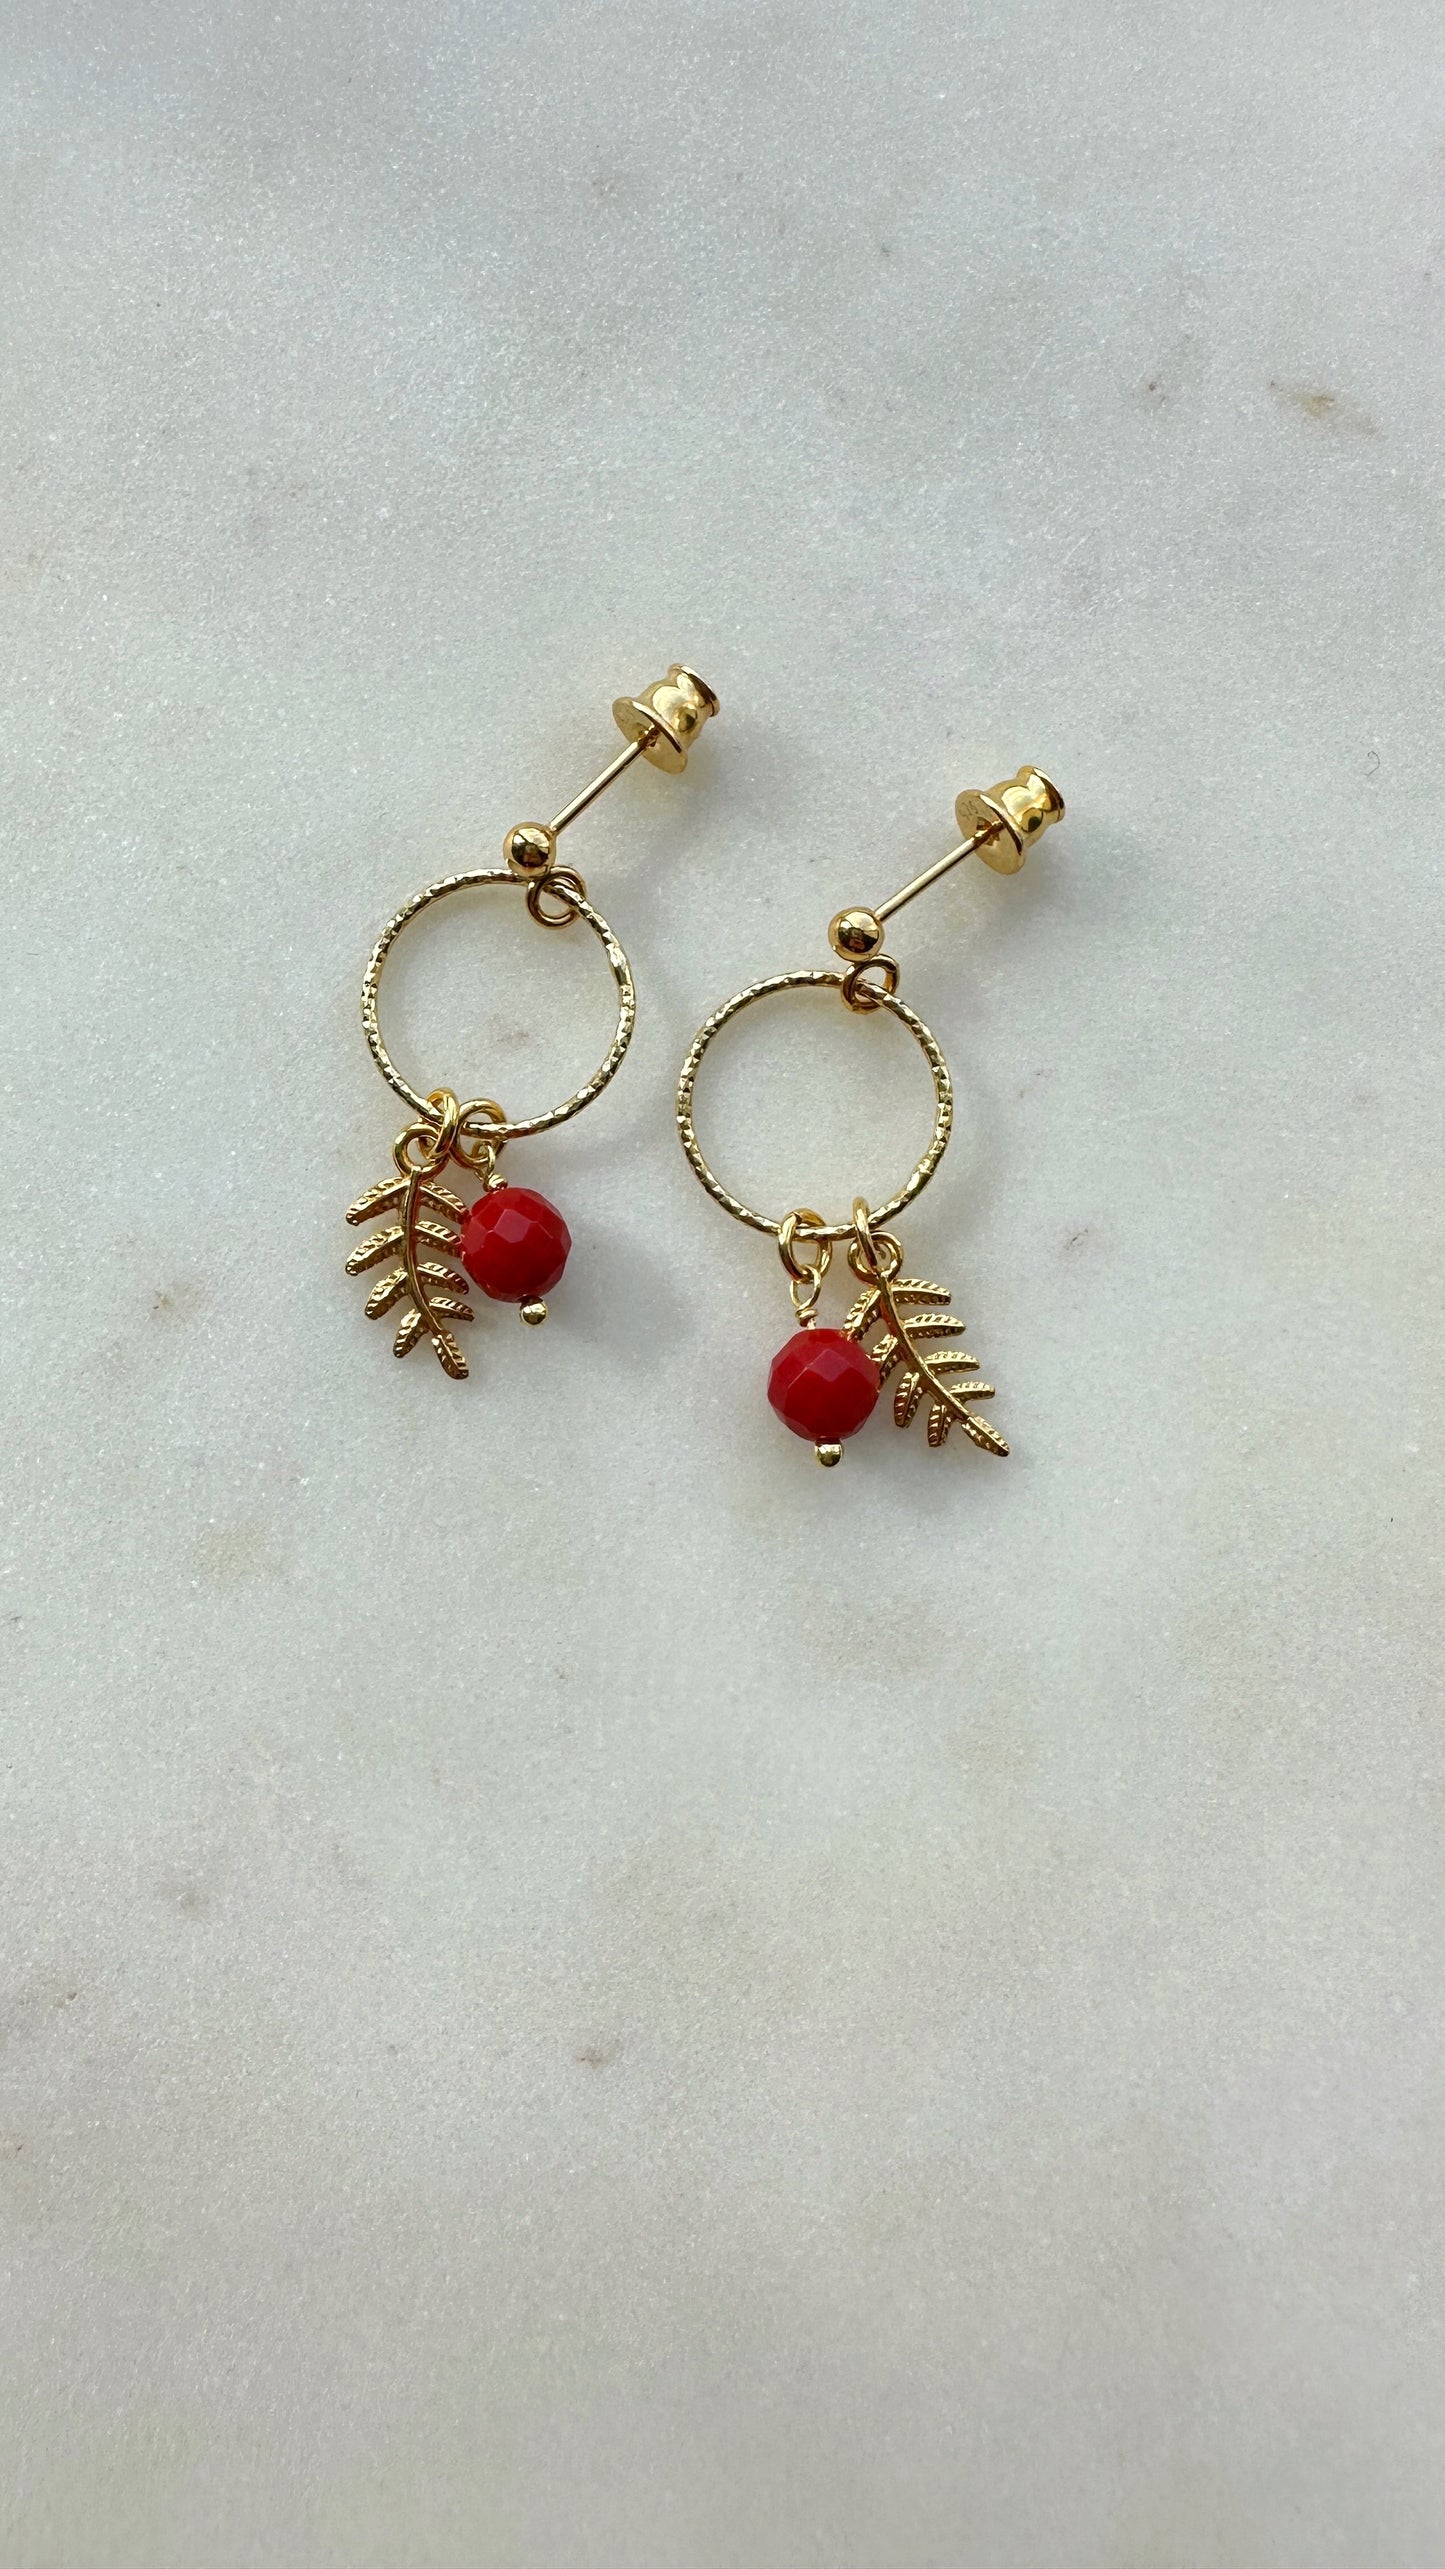 Rowan Berry earrings